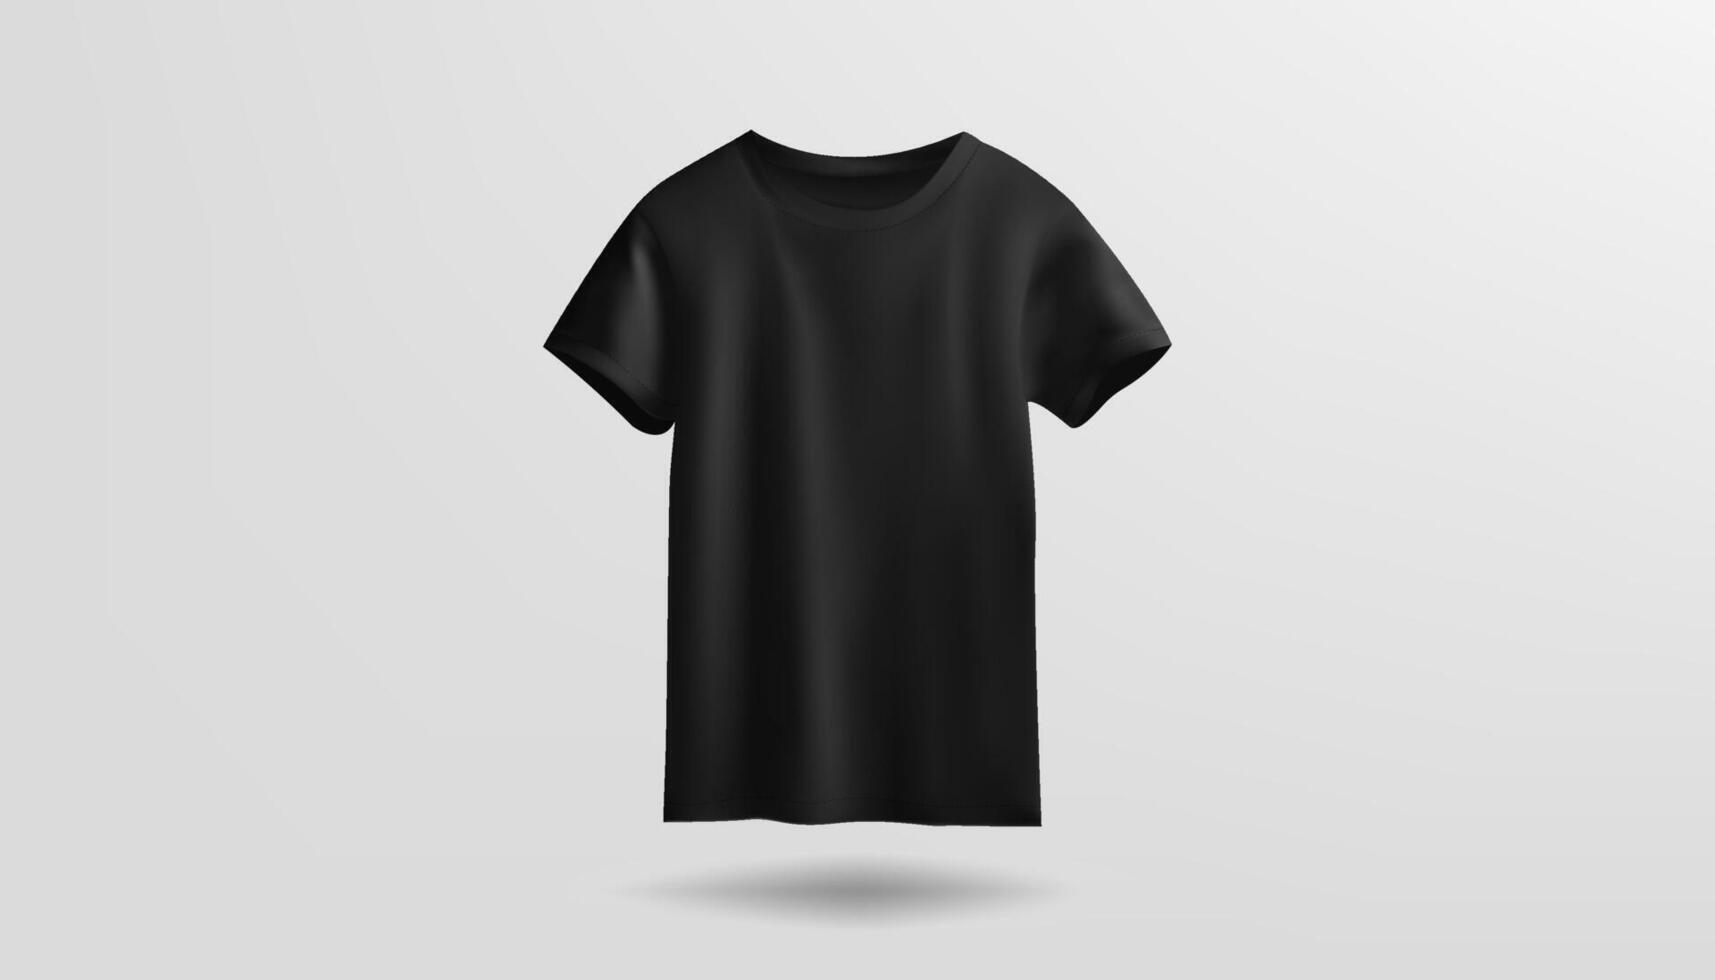 ein 3d Attrappe, Lehrmodell, Simulation die Geschenke ein leer T-Shirt im Schwarz, isoliert gegen ein Weiß Hintergrund, geeignet zum verschiedene Entwürfe. Ideal zum präsentieren bekleidung zum beide männlich und weiblich Träger. vektor